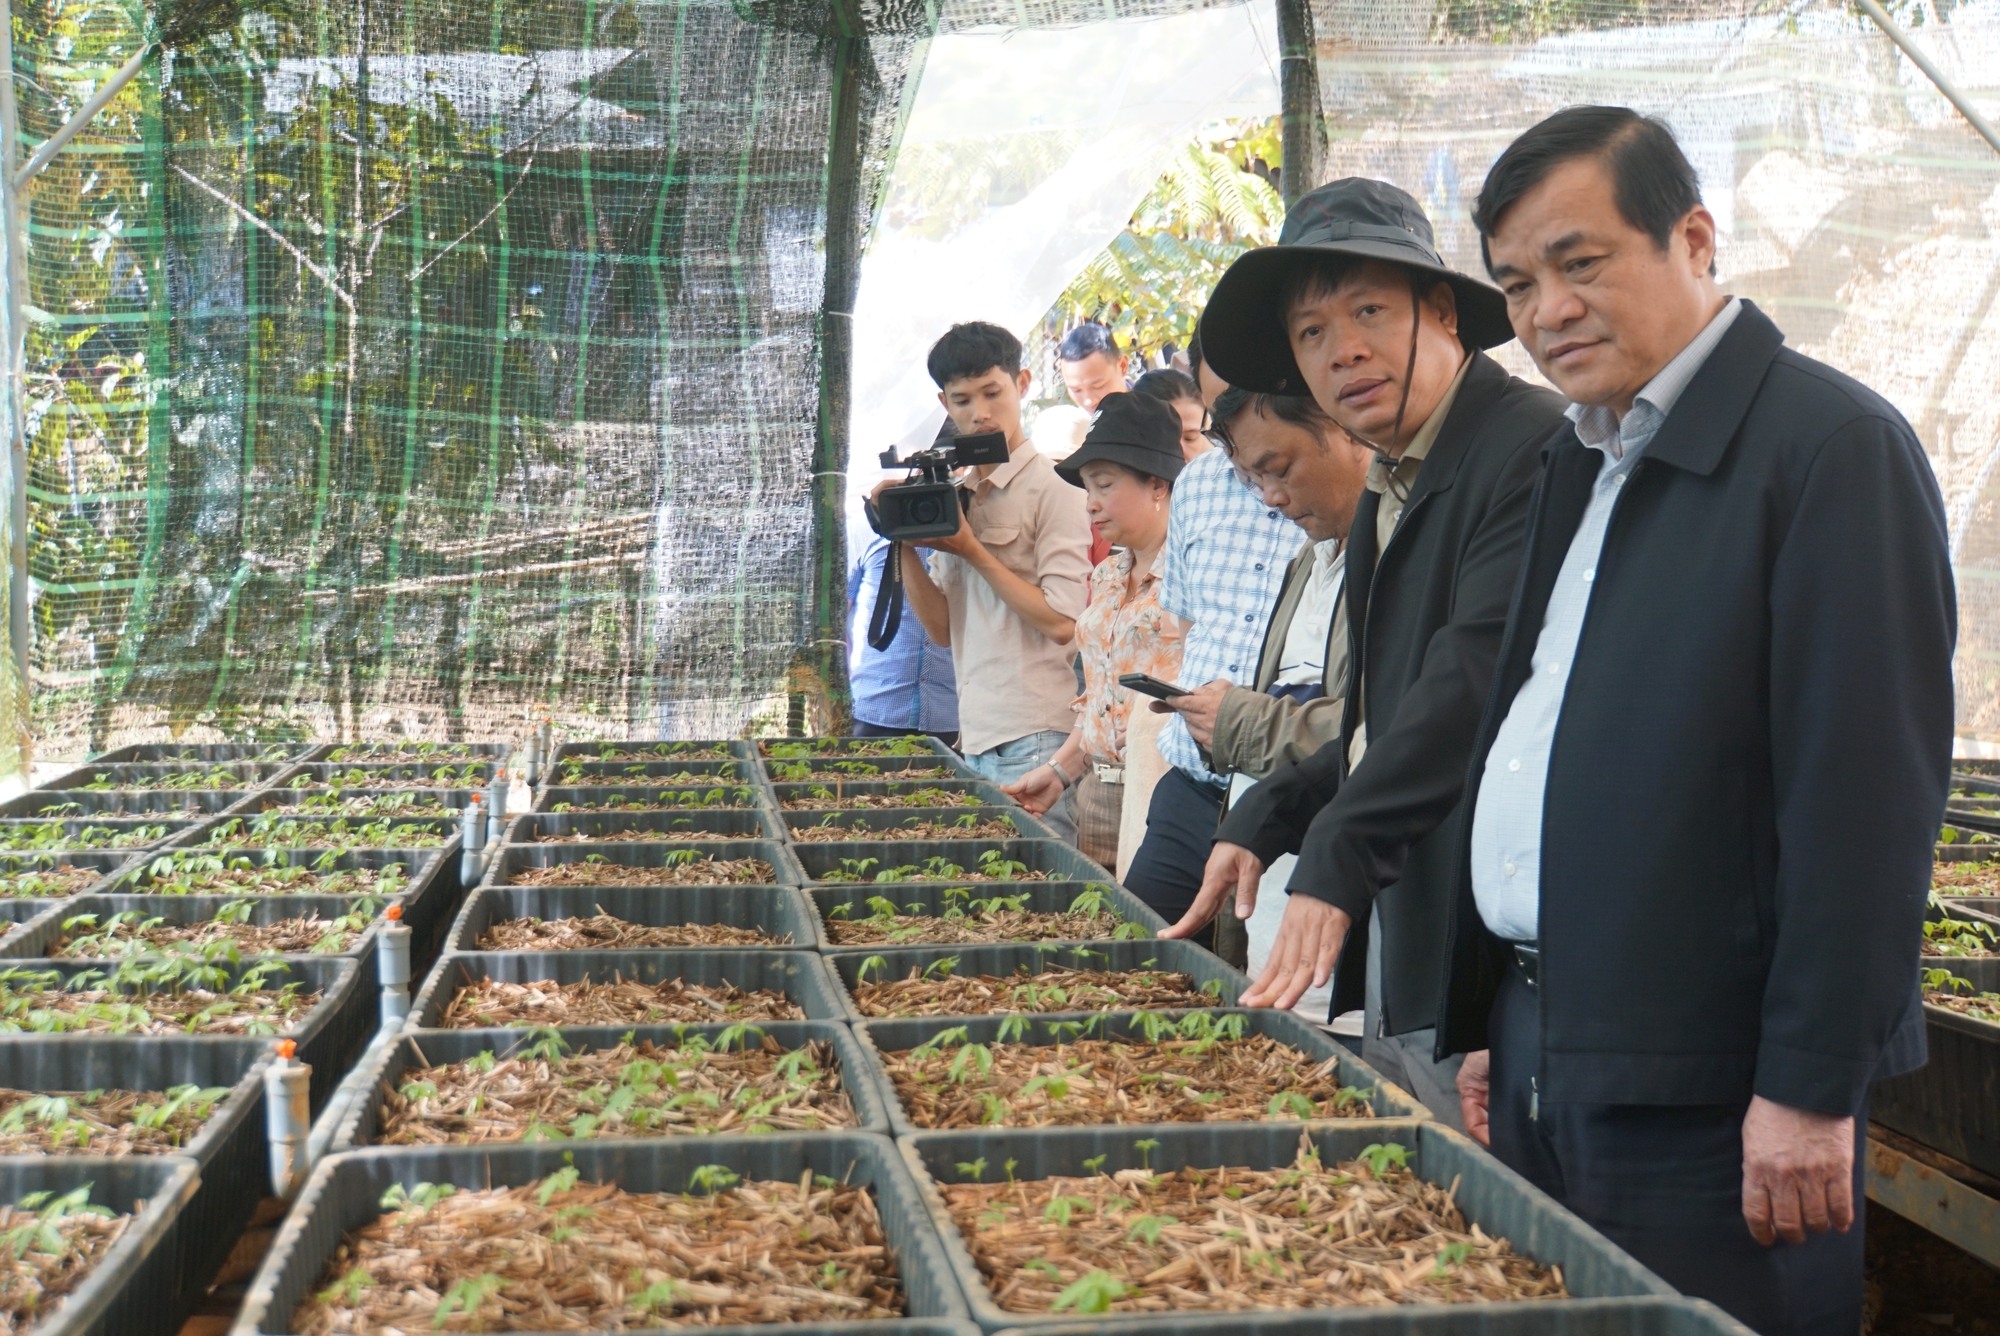  Quảng Nam thống nhất chấm dứt hoạt động dự án đầu tư nhà máy chế biến sâm và cây dược liệu  - Ảnh 1.